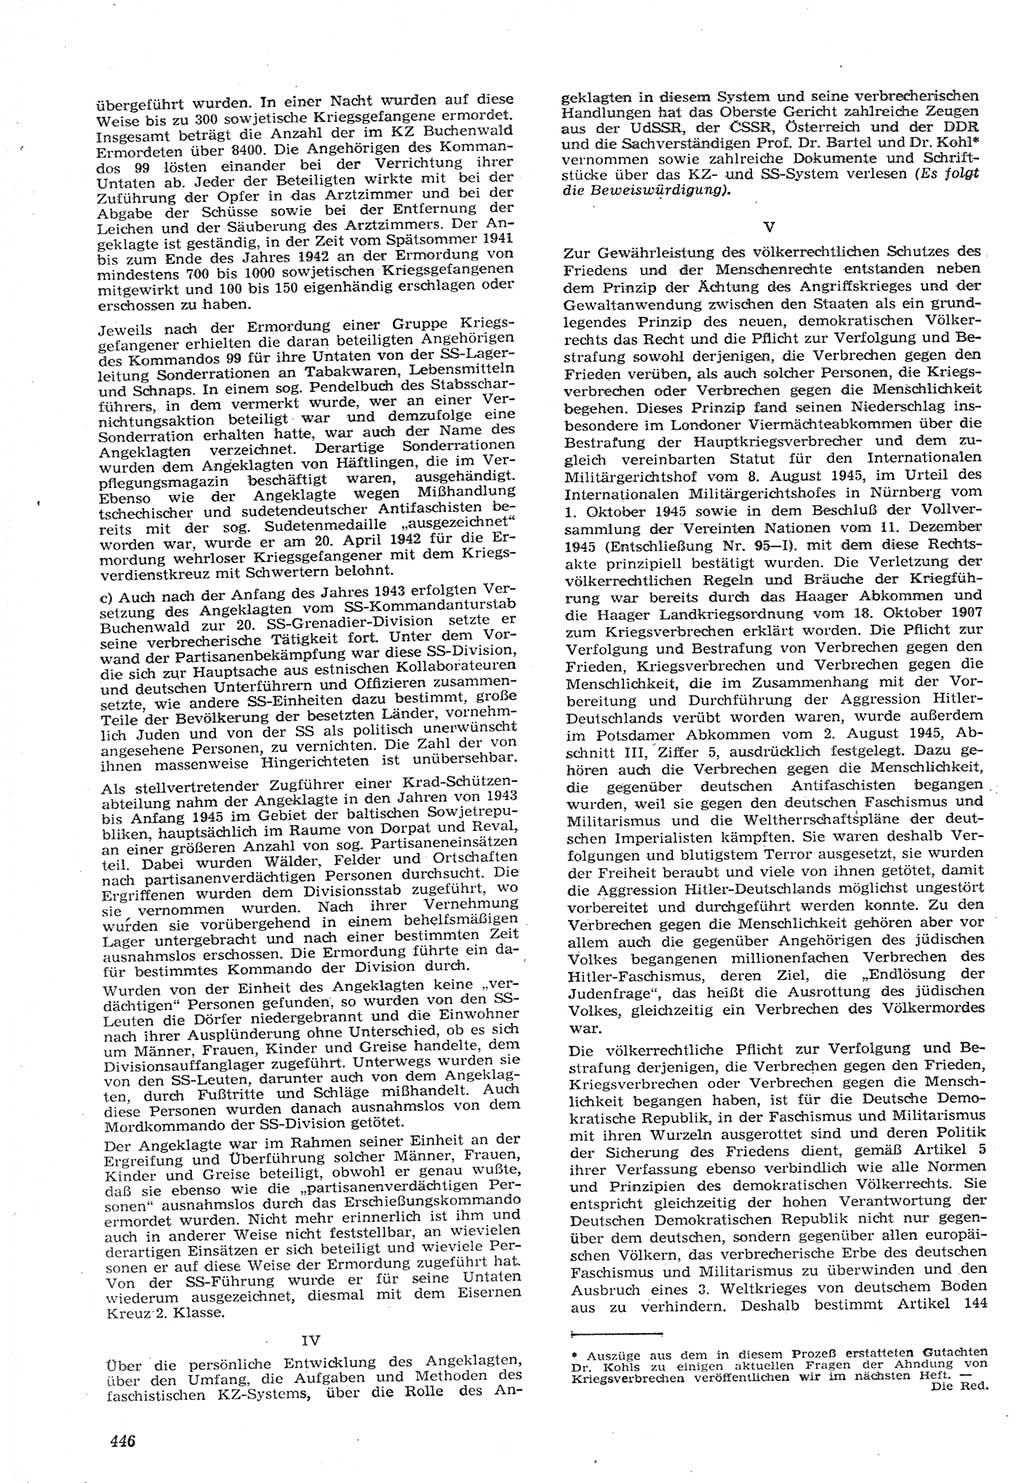 Neue Justiz (NJ), Zeitschrift für Recht und Rechtswissenschaft [Deutsche Demokratische Republik (DDR)], 15. Jahrgang 1961, Seite 446 (NJ DDR 1961, S. 446)